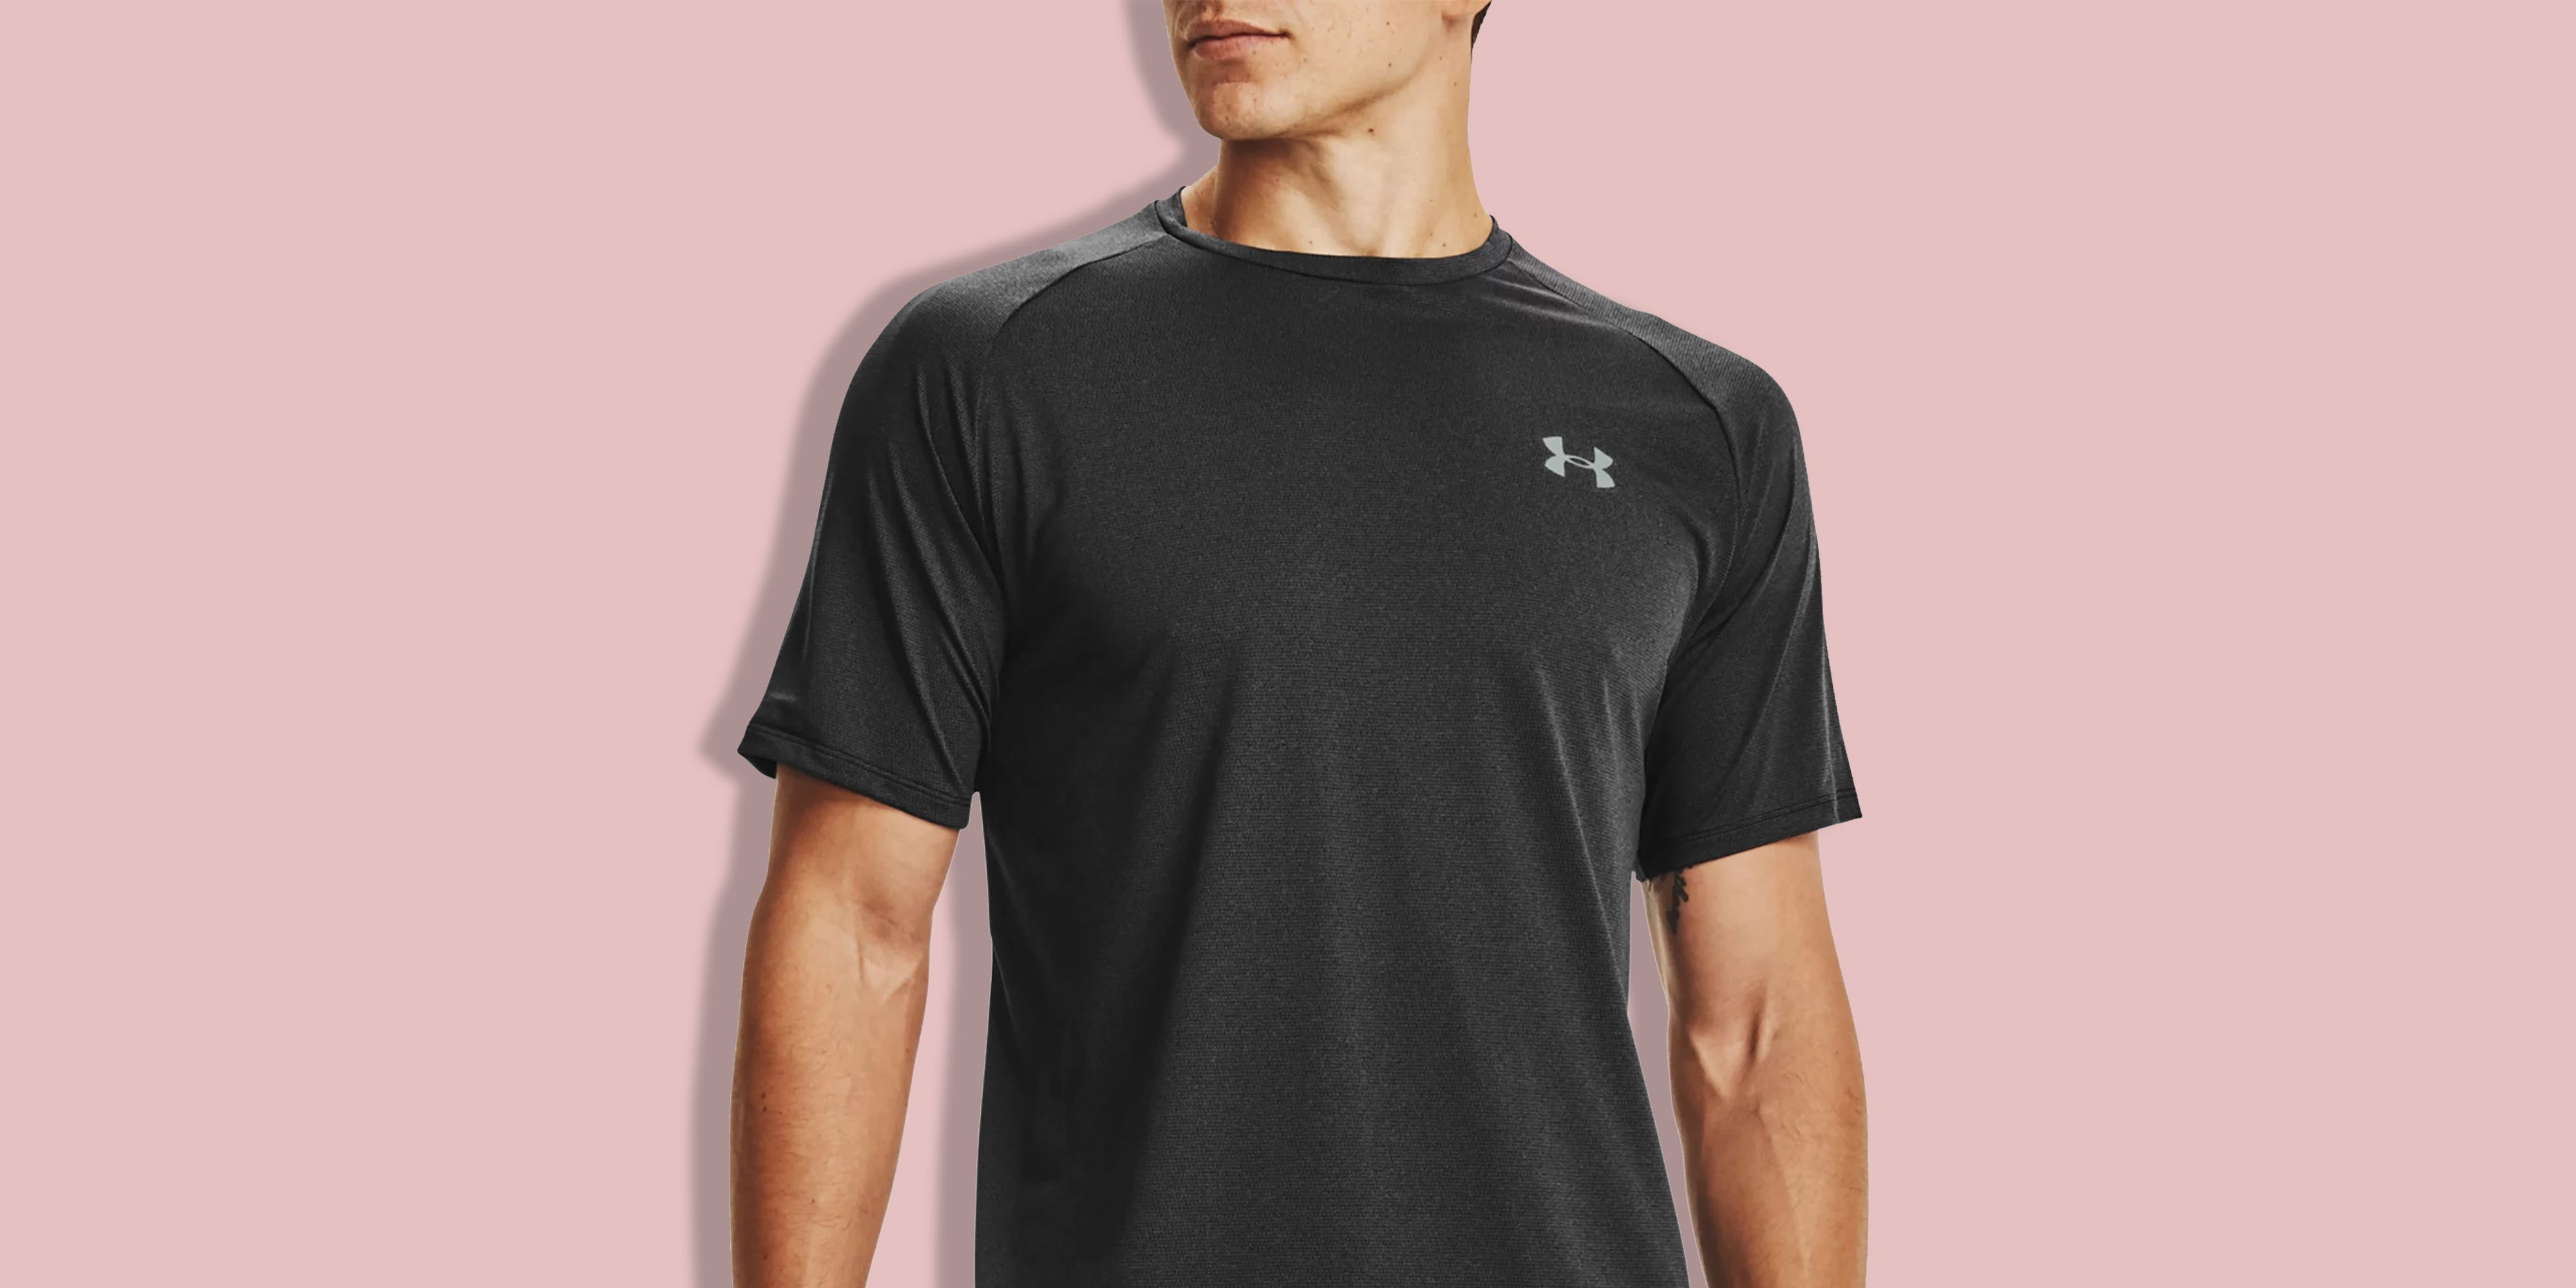 mezelf ongebruikt Vervullen Best Workout Clothes for Men on Amazon - Amazon Fitness Clothing for Men